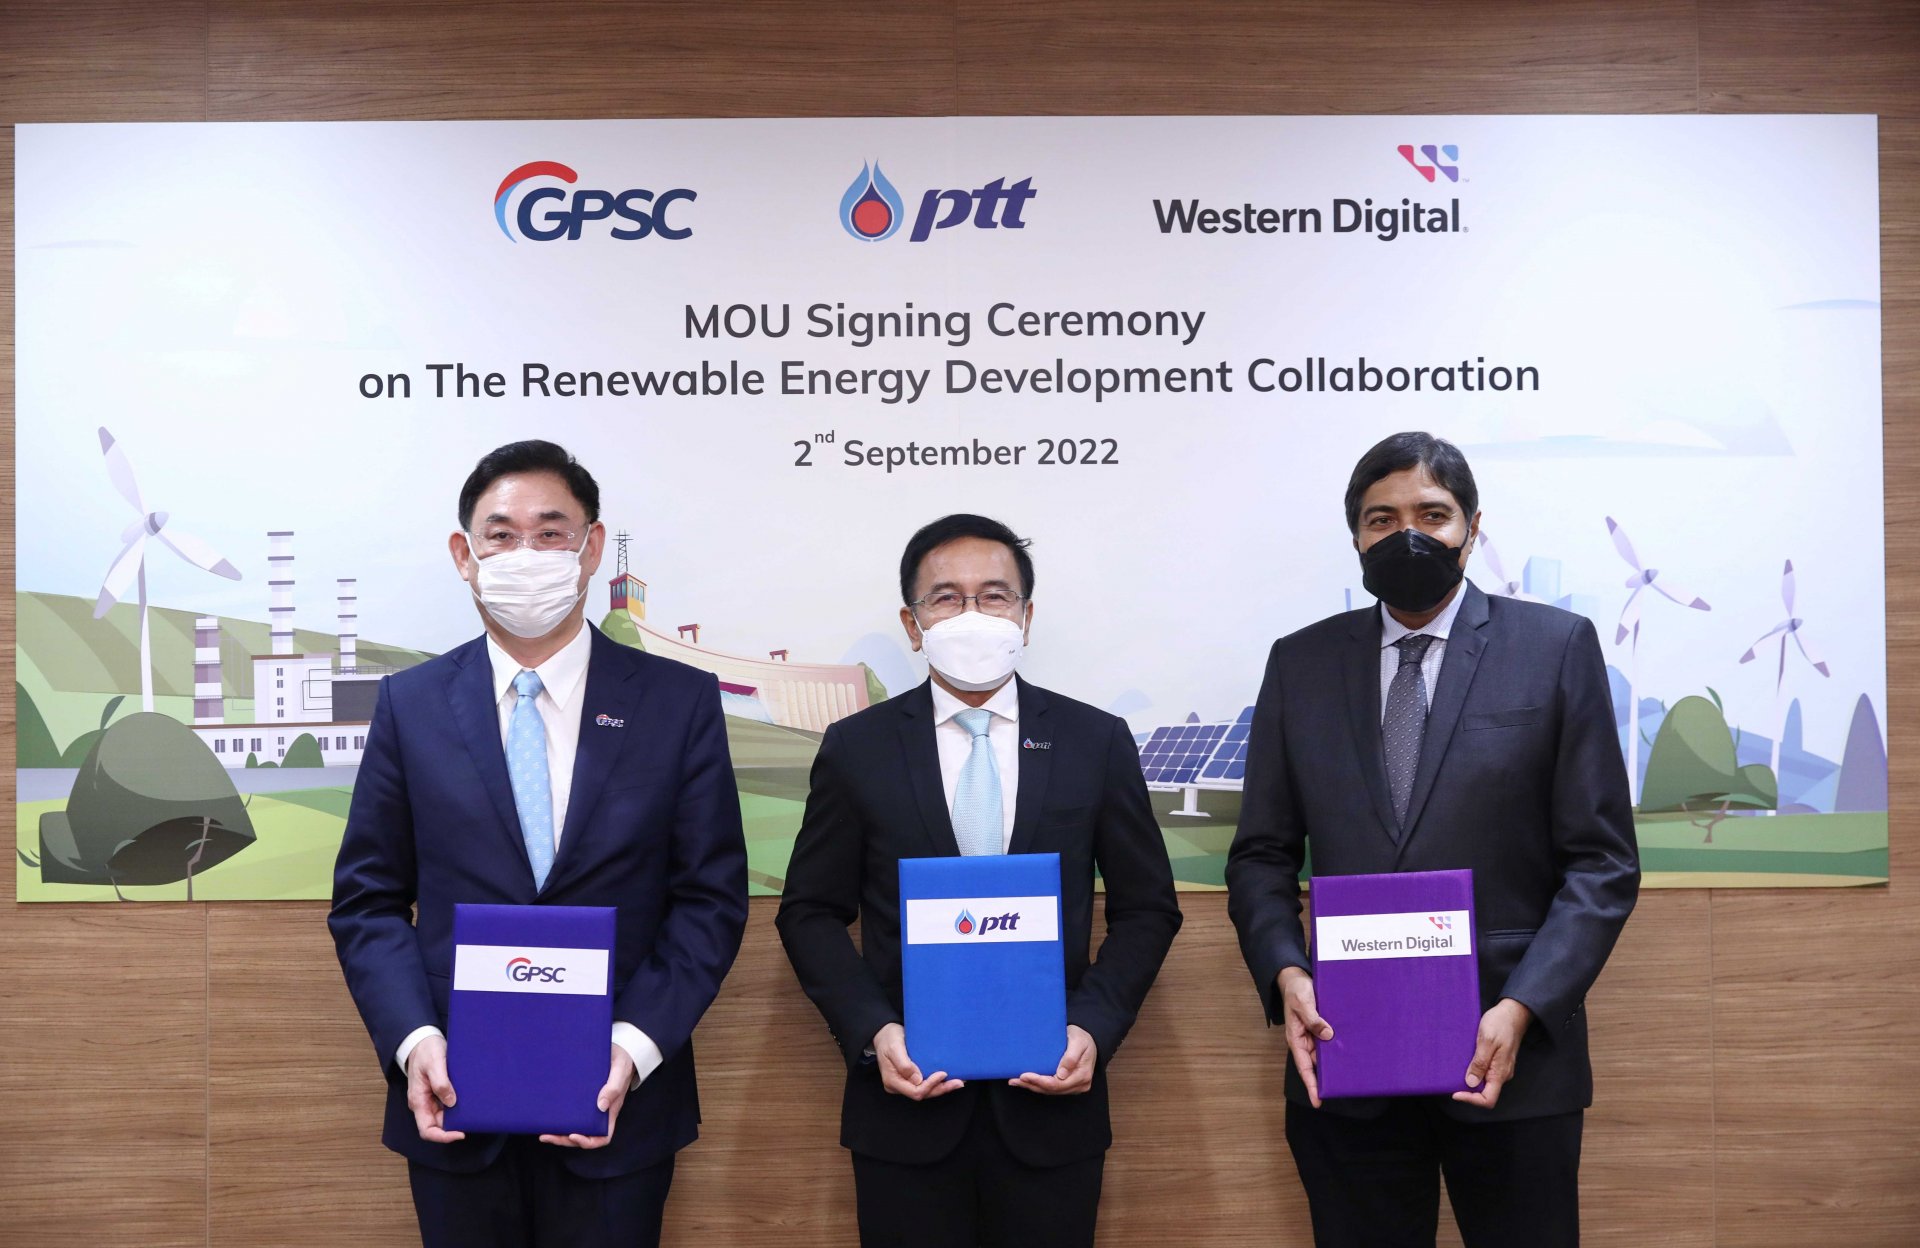 ปตท. ผนึกกำลัง GPSC และ WD ขยายความร่วมมือการใช้พลังงานหมุนเวียนในภาคอุตสาหกรรมไทย